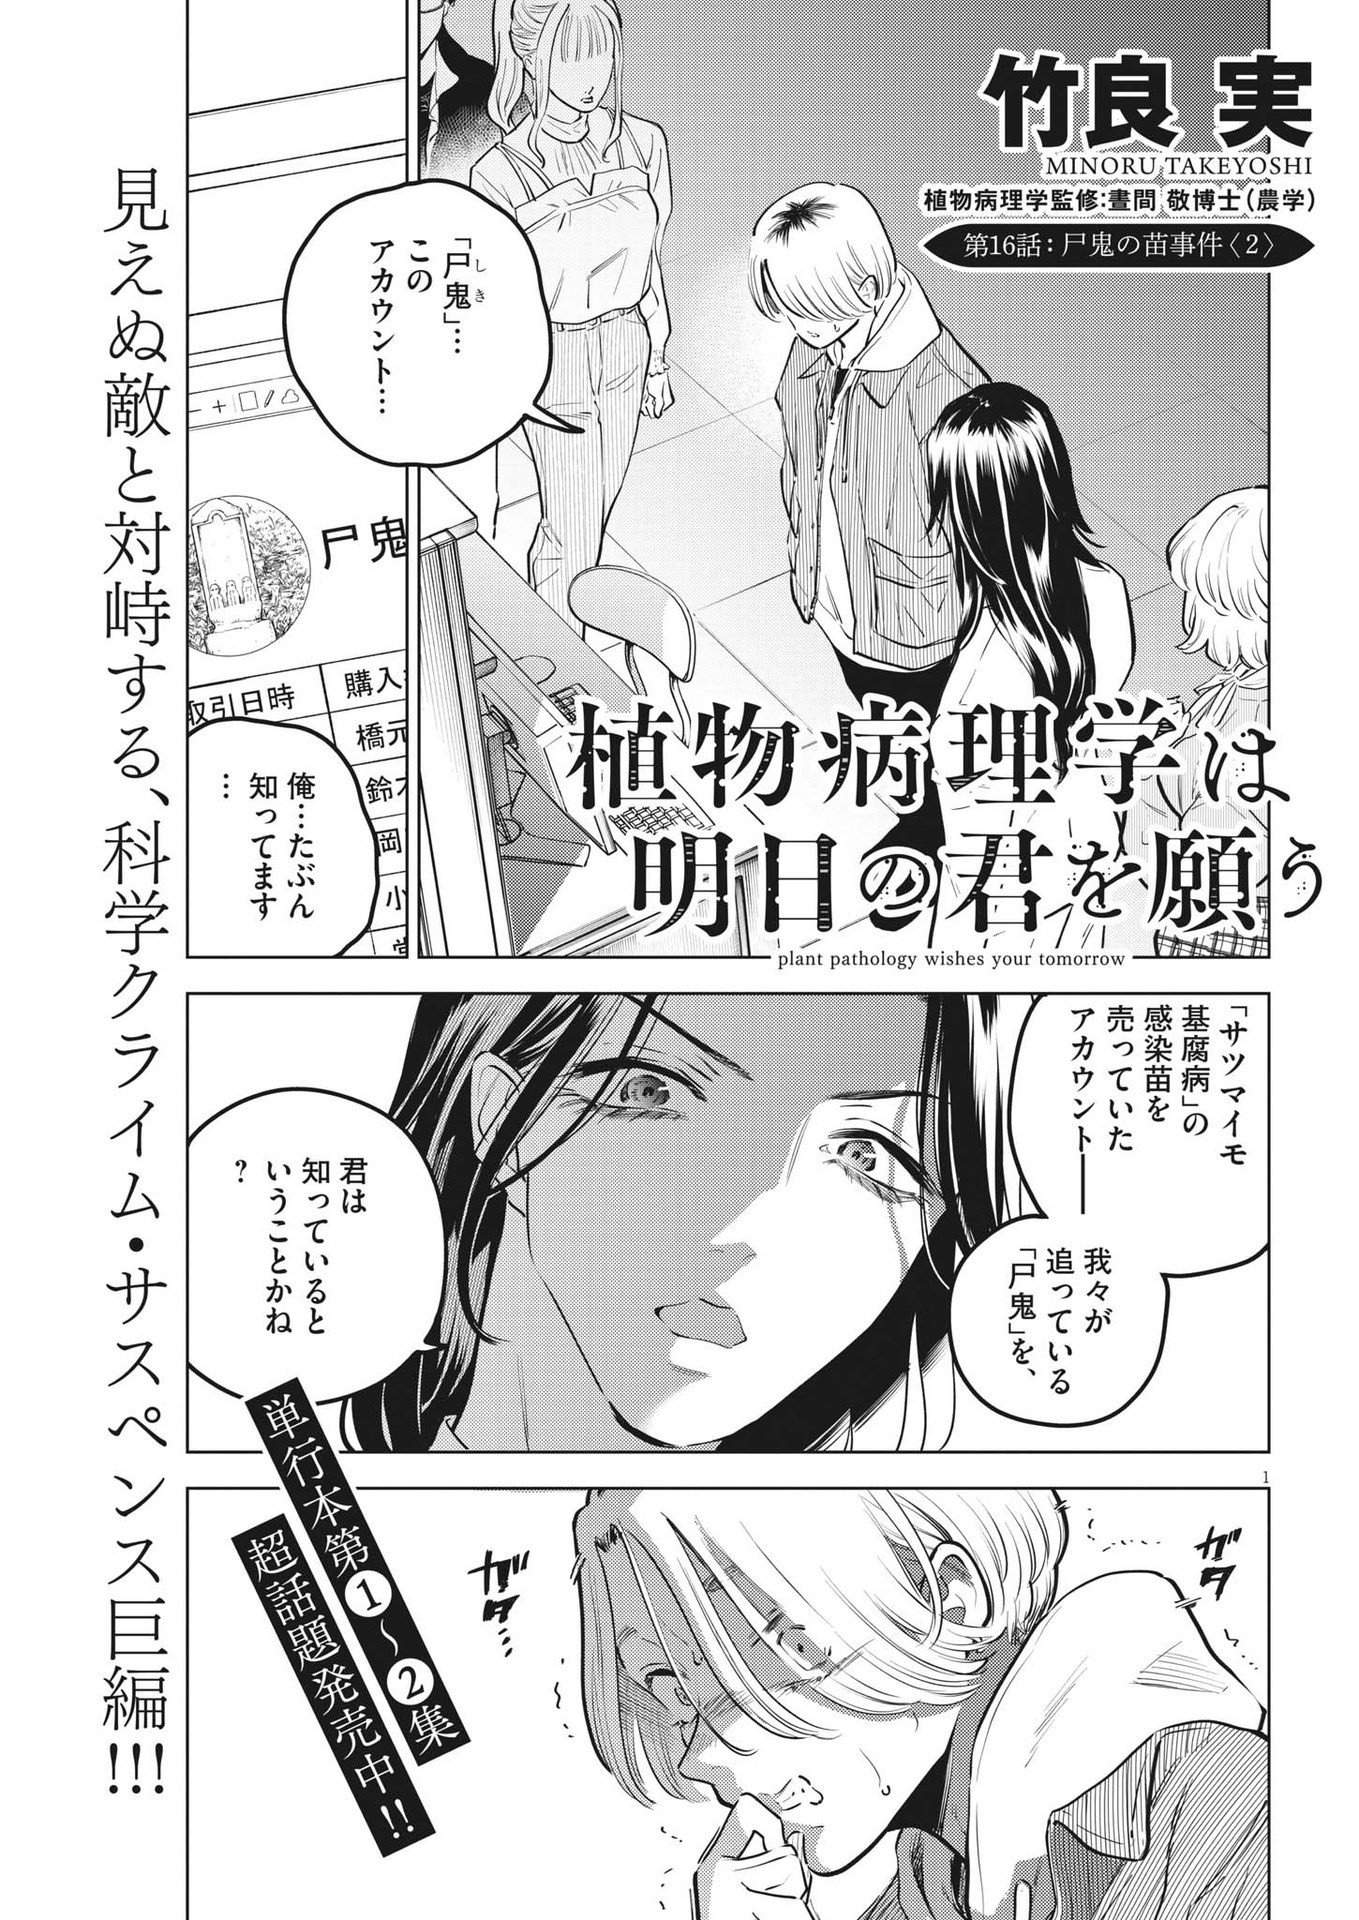 Shokubutsu Byourigaku wa Ashita no Kimi o Negau - Chapter 16 - Page 1